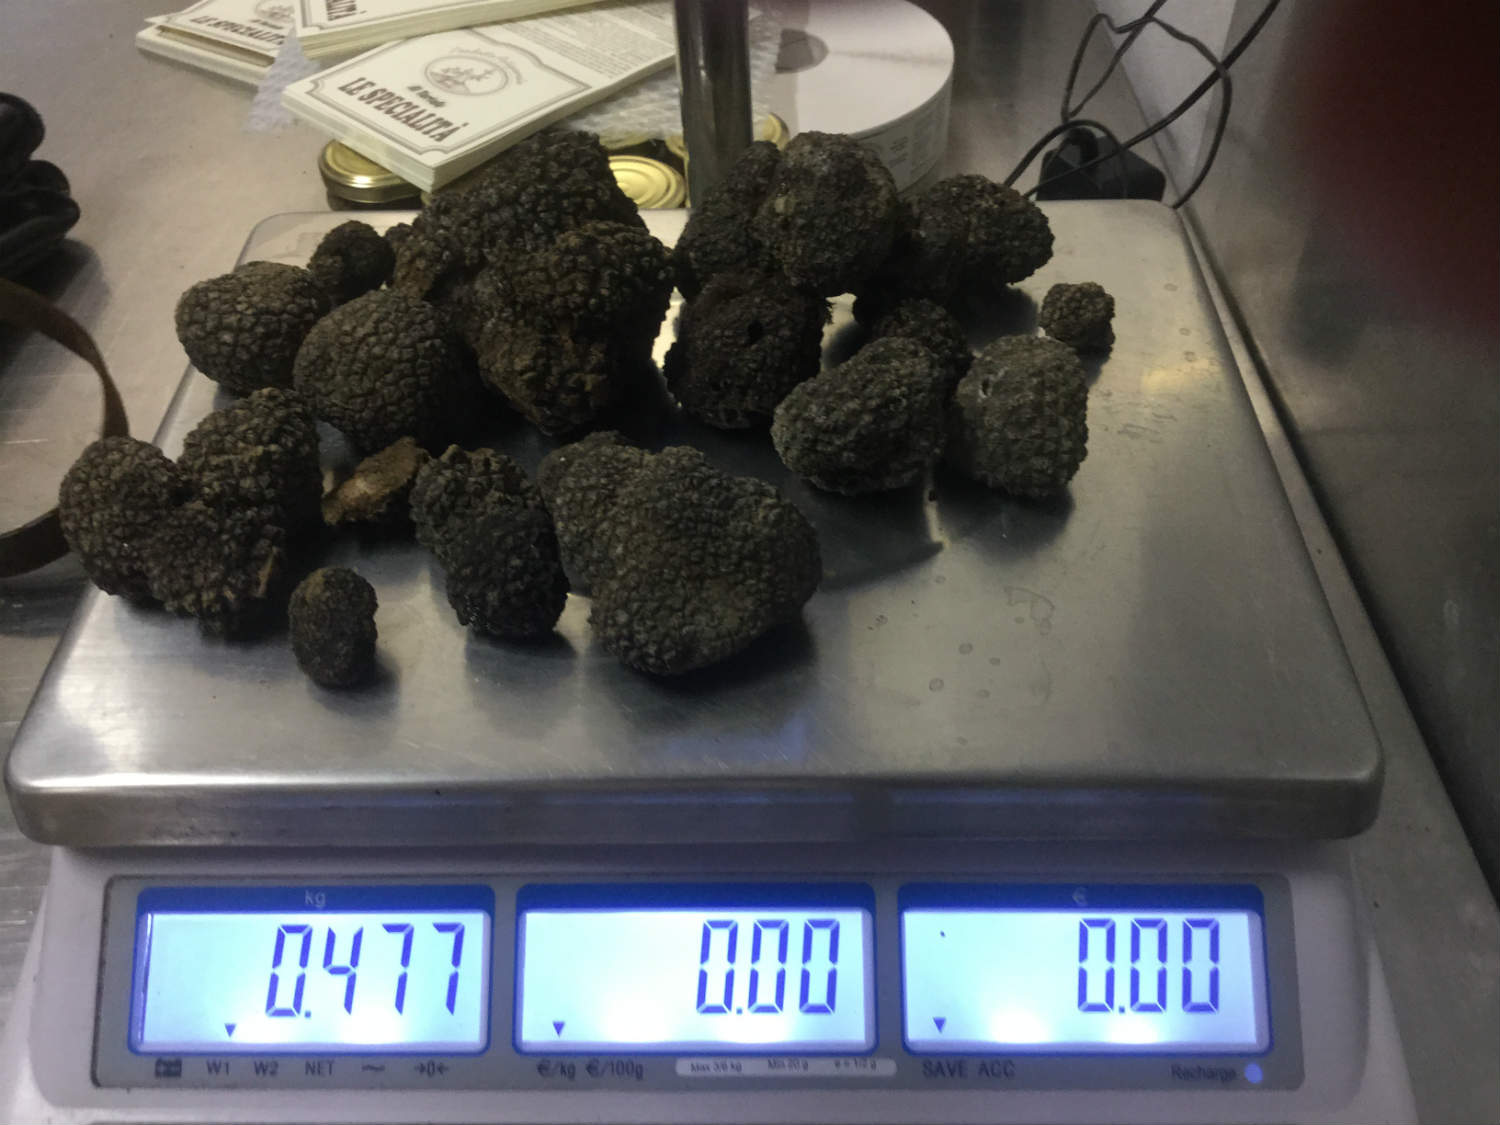 truffles 477g.jpg